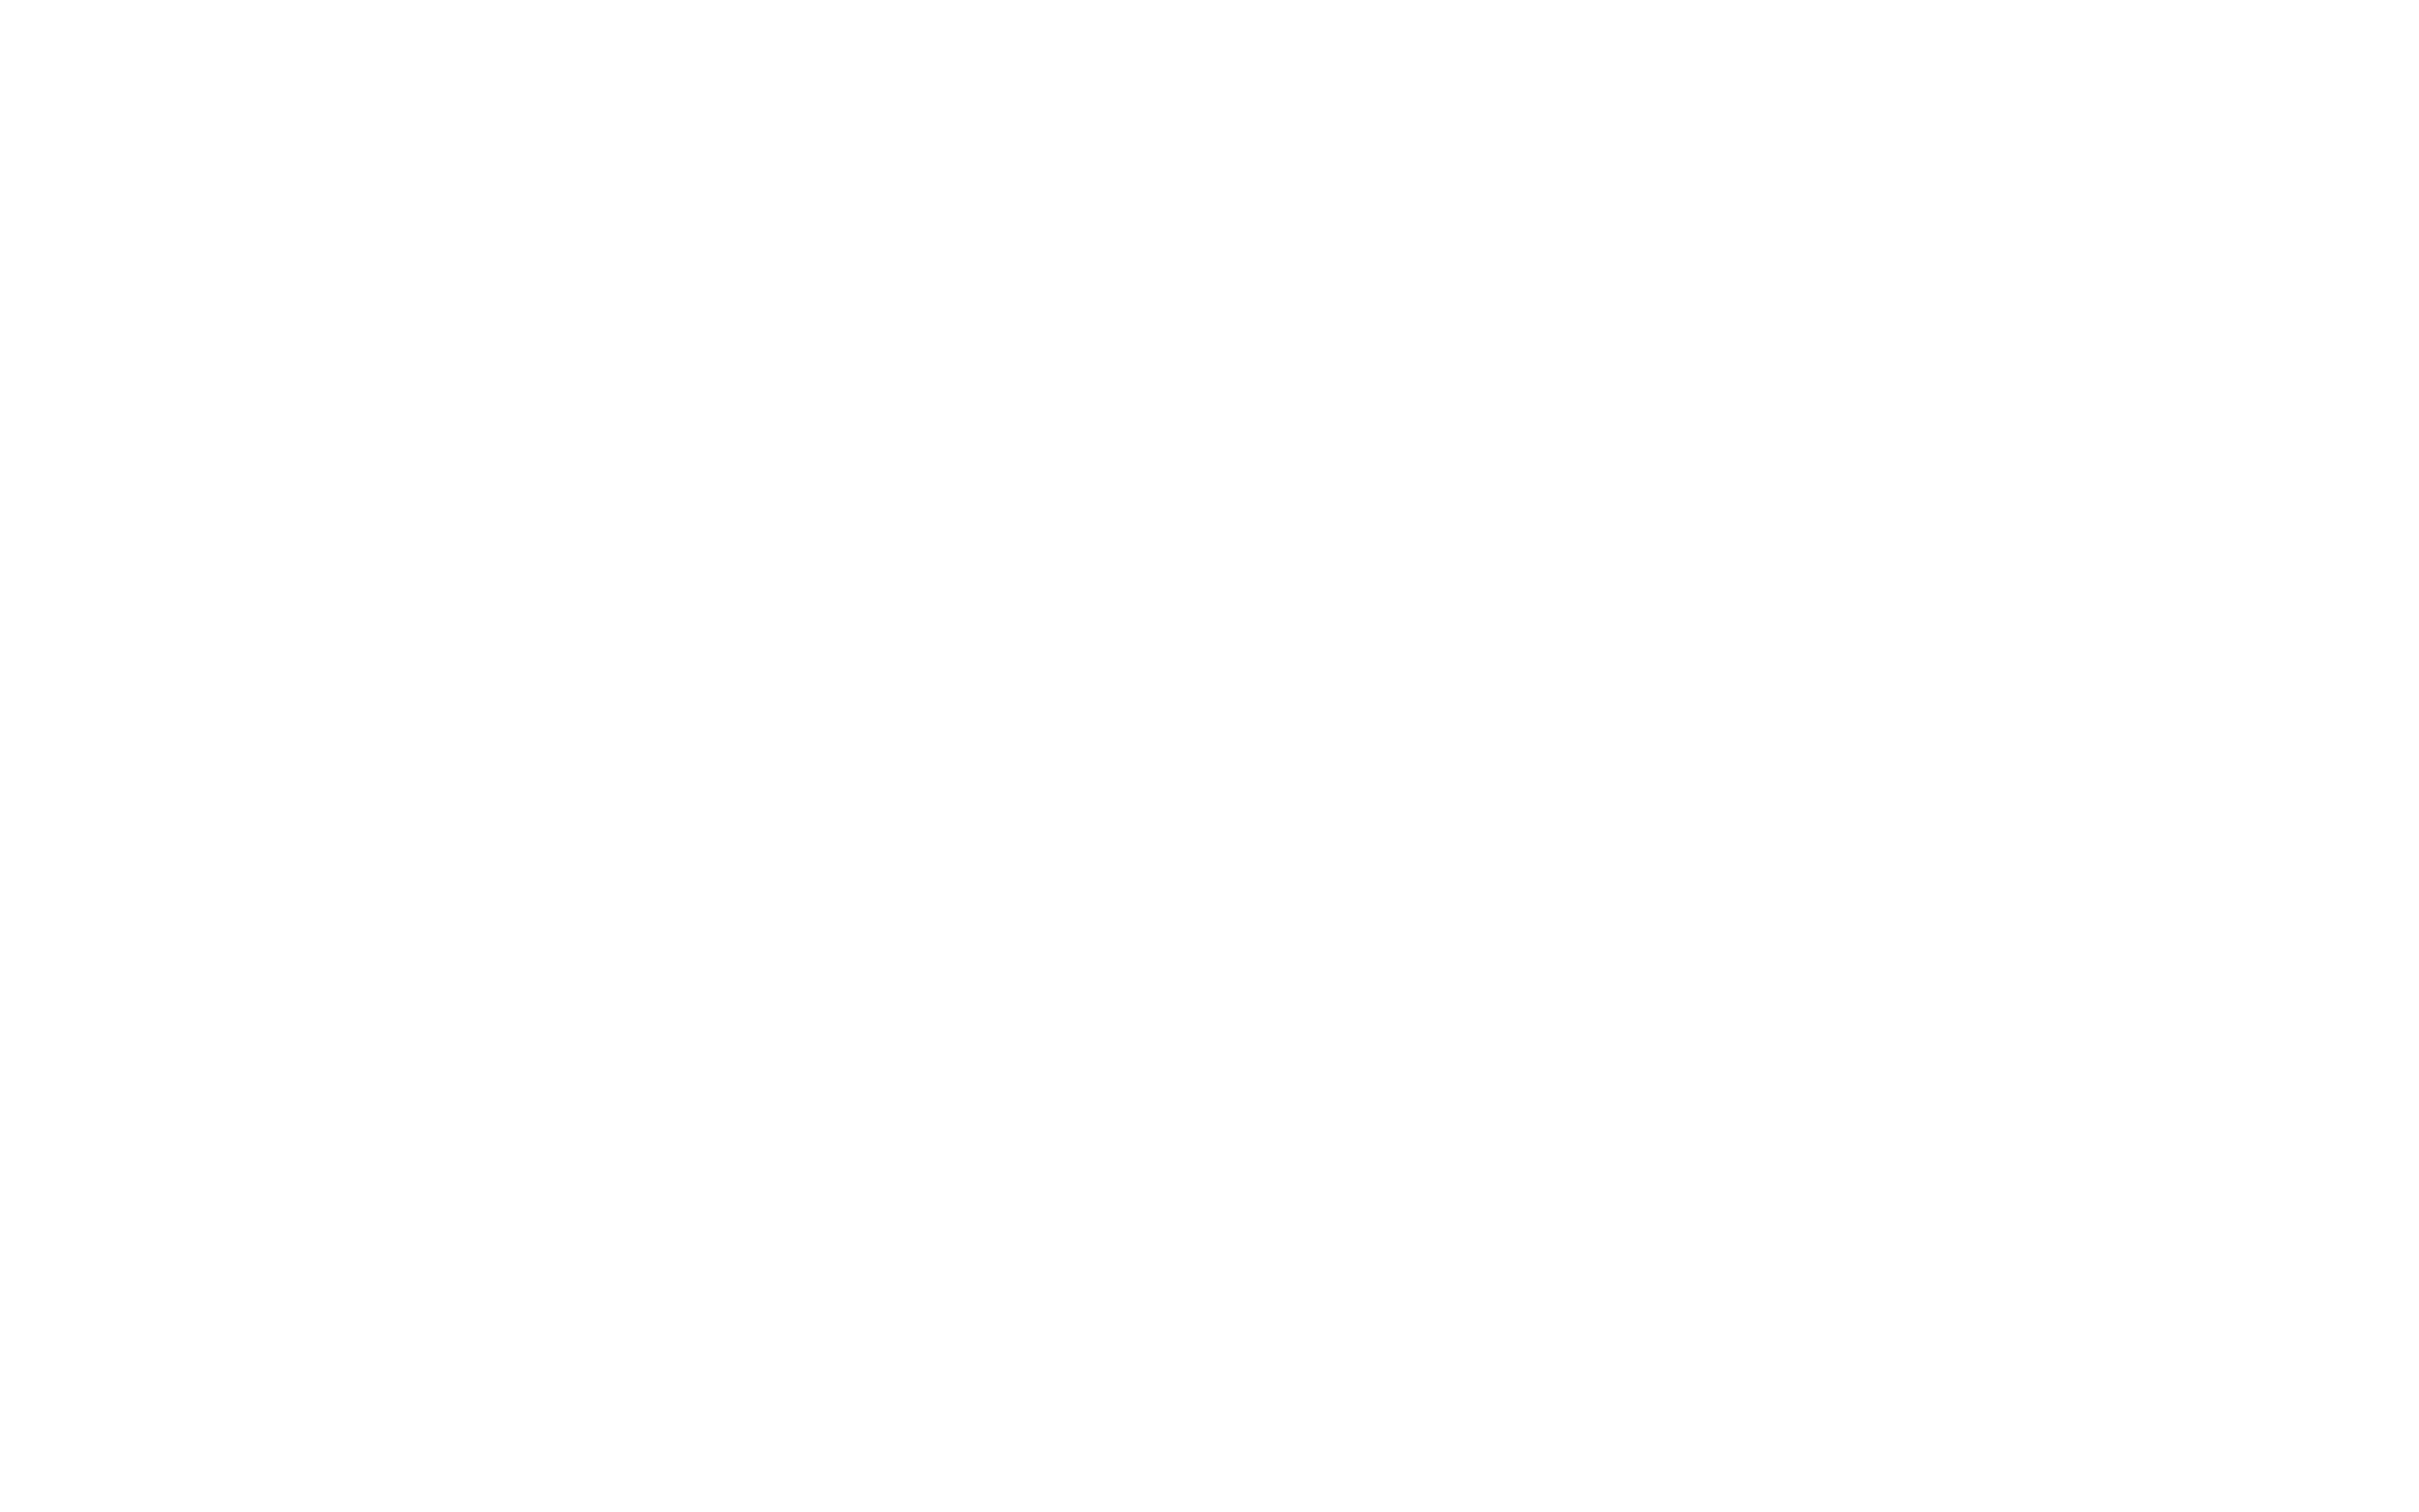 ACEs Debate Club